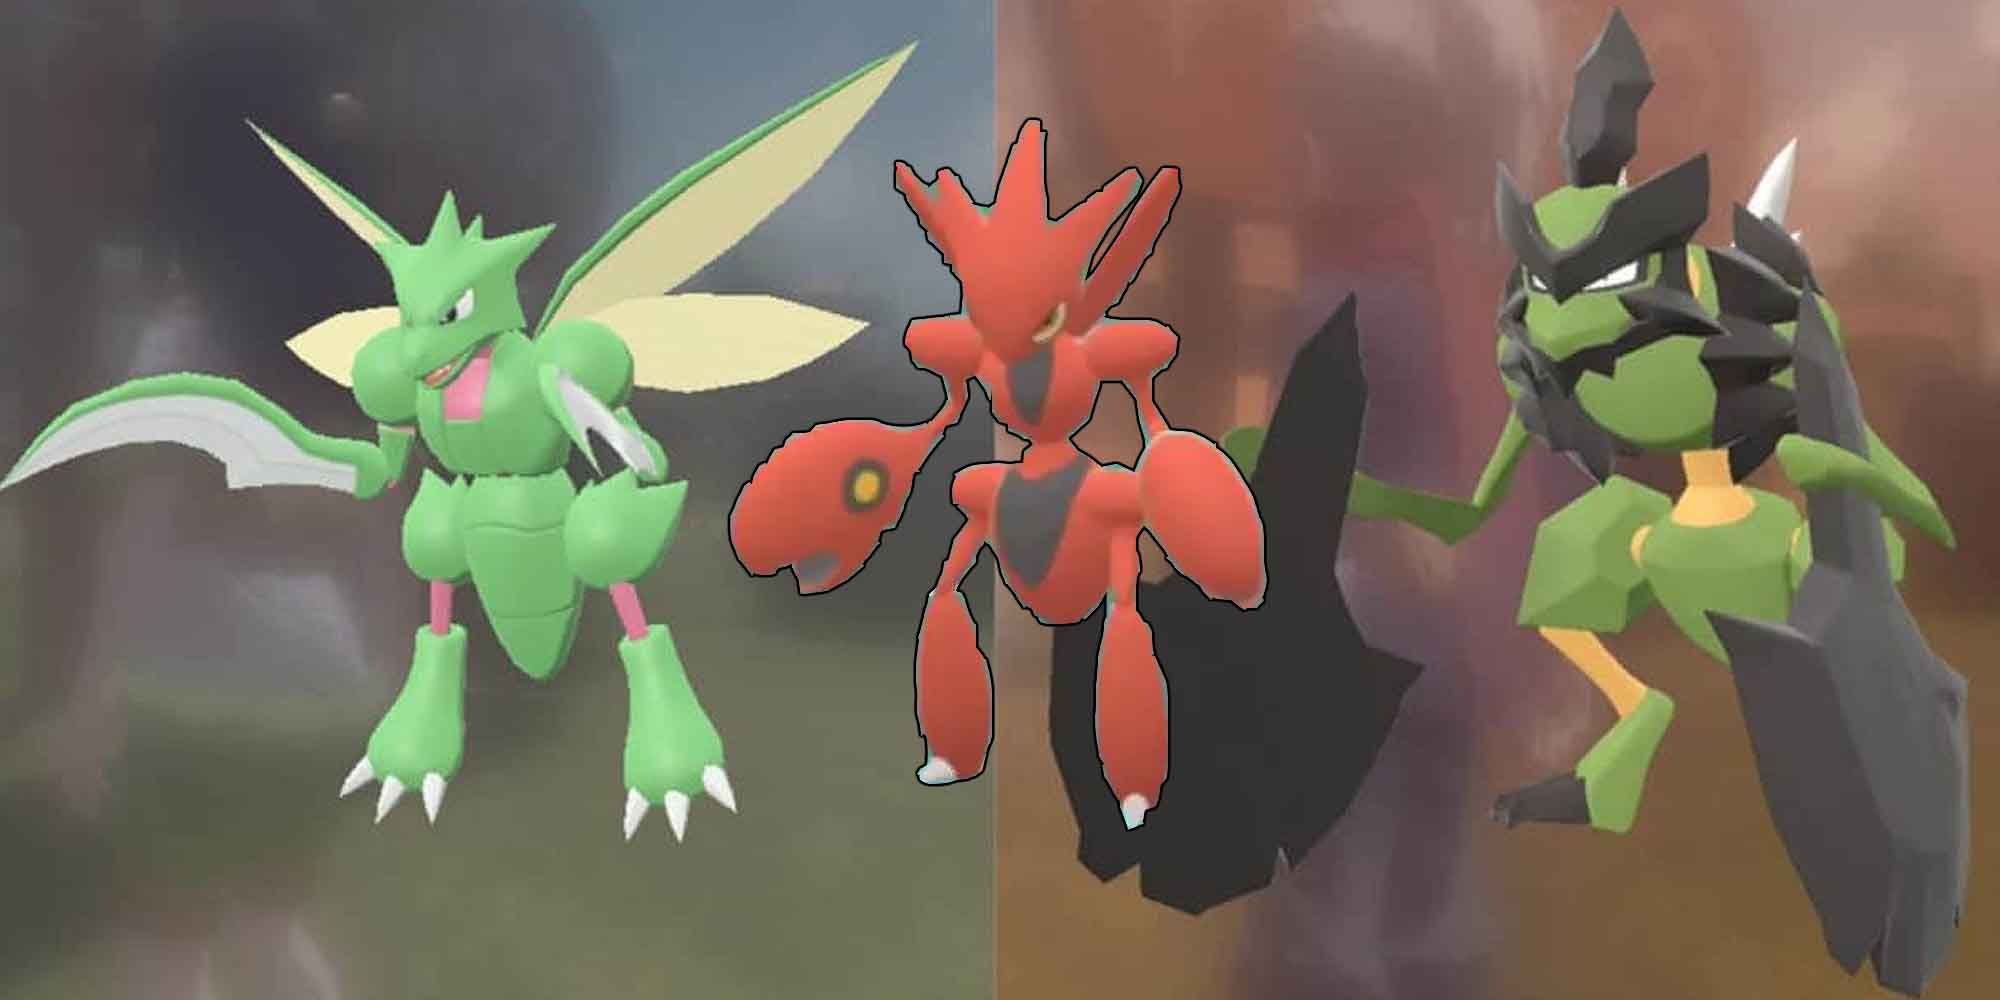 Scyther, Scizor, and Kleavor in the Pokemon series